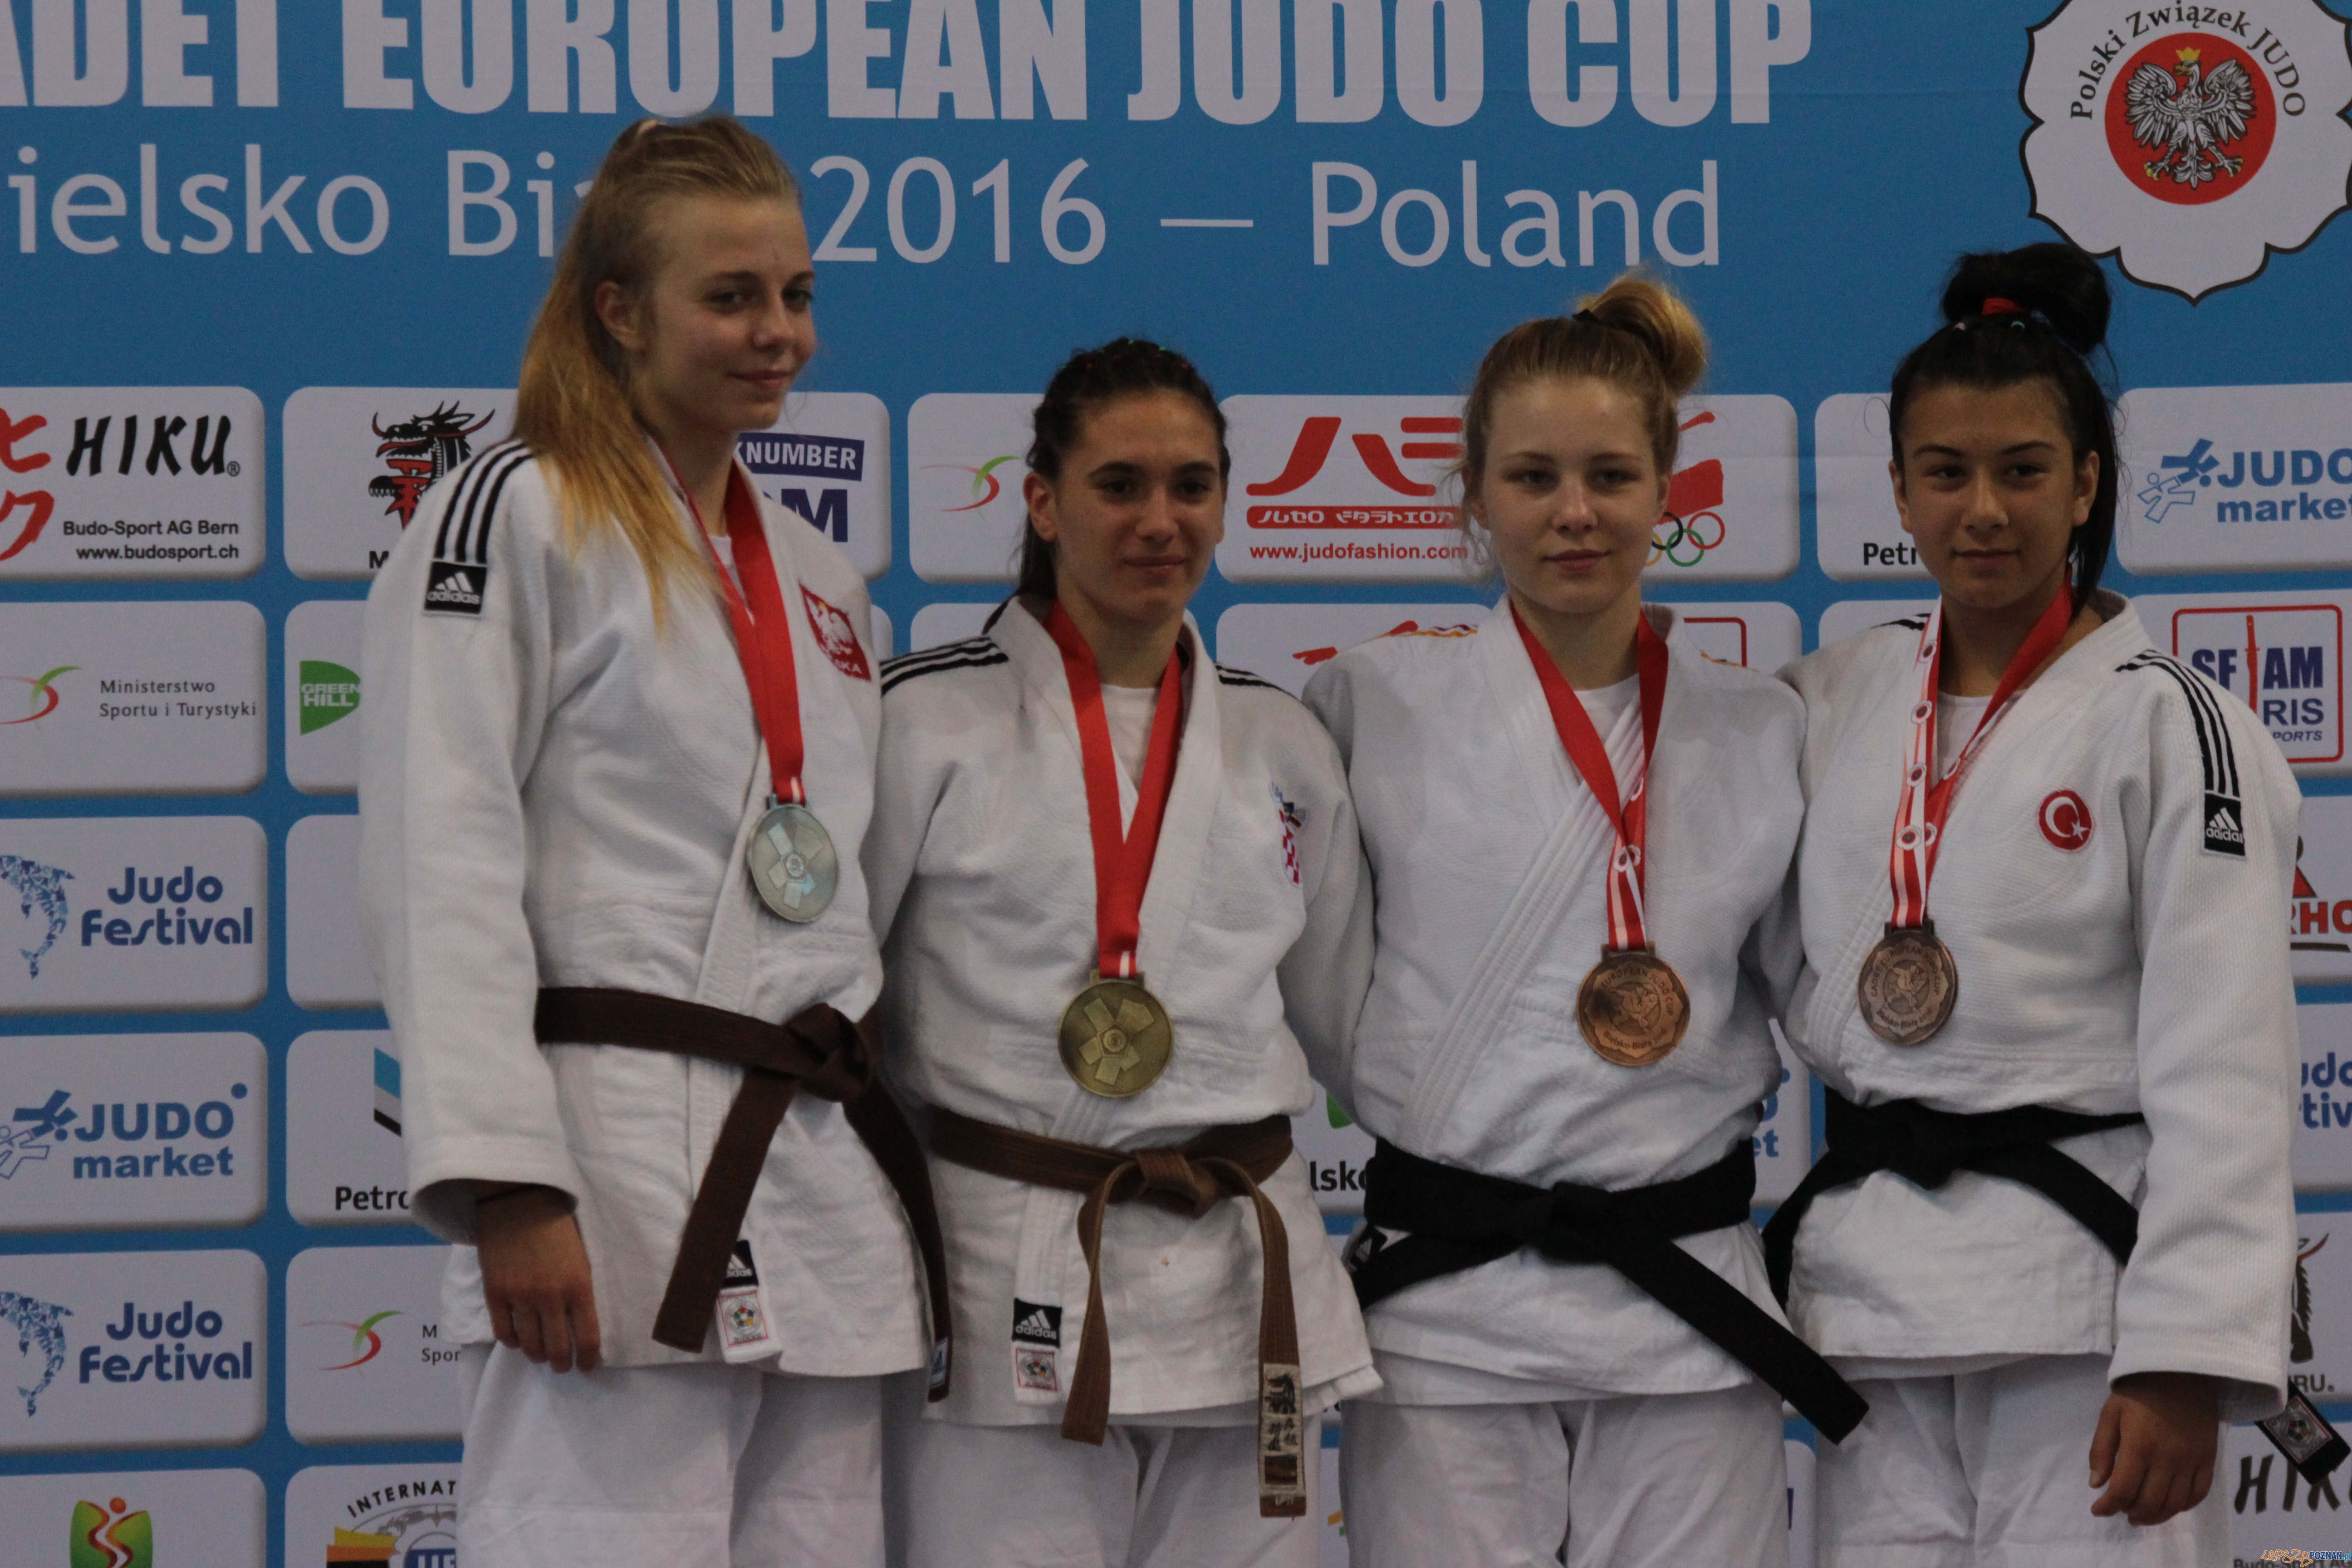 Mistrzostwa Europy w Judo w Bielsku Białej  Foto: Akademia Judo